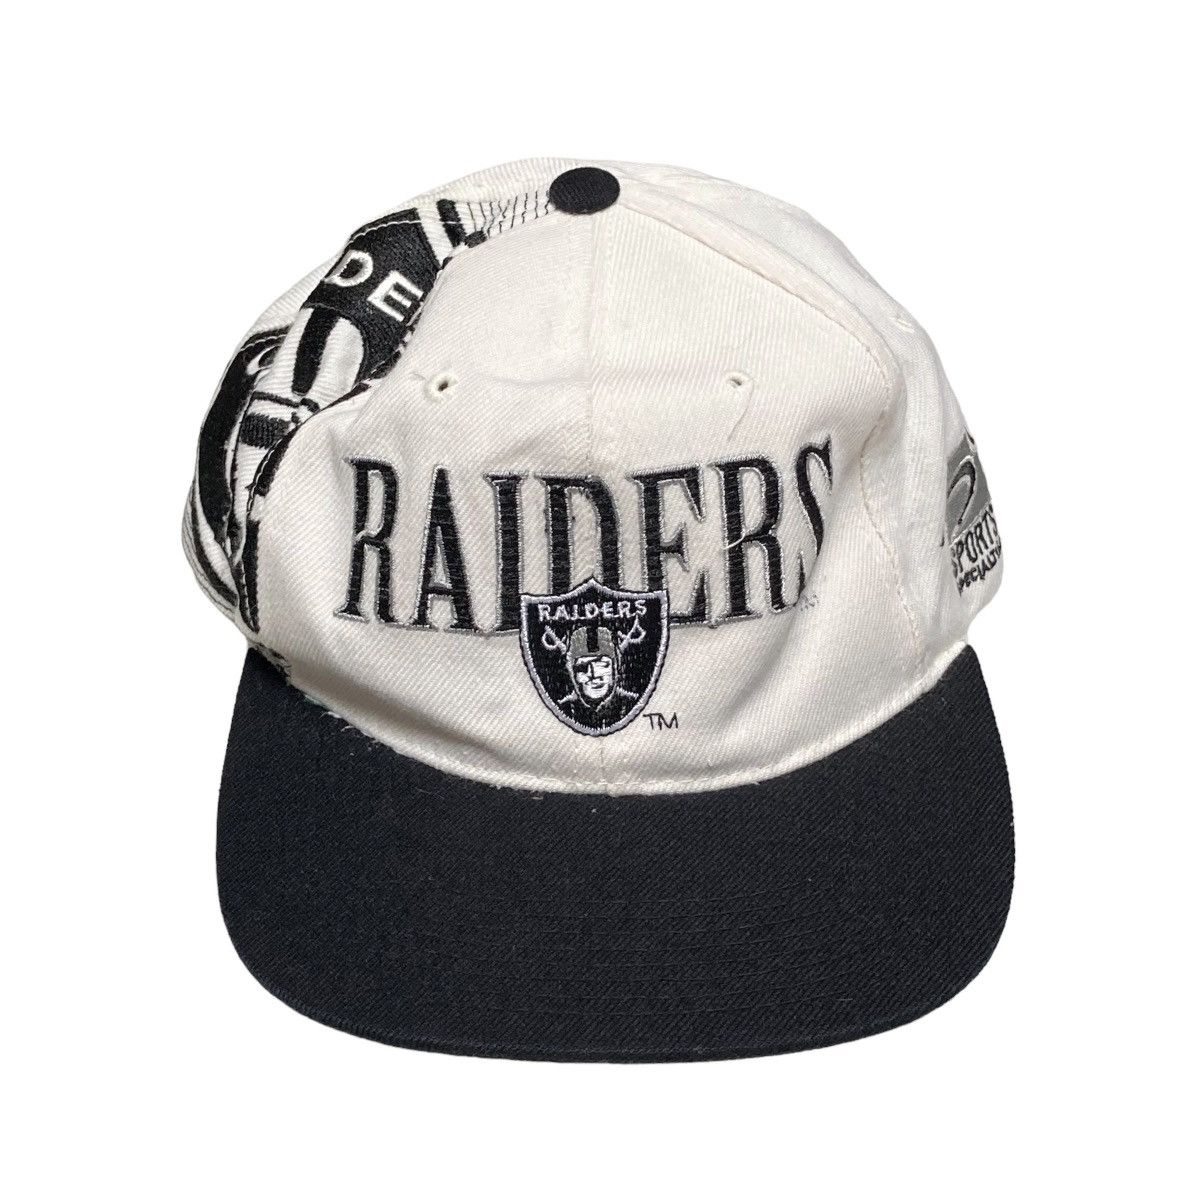 Vintage Los Angeles Raiders hat LA Raiders Sports Specialties NWA